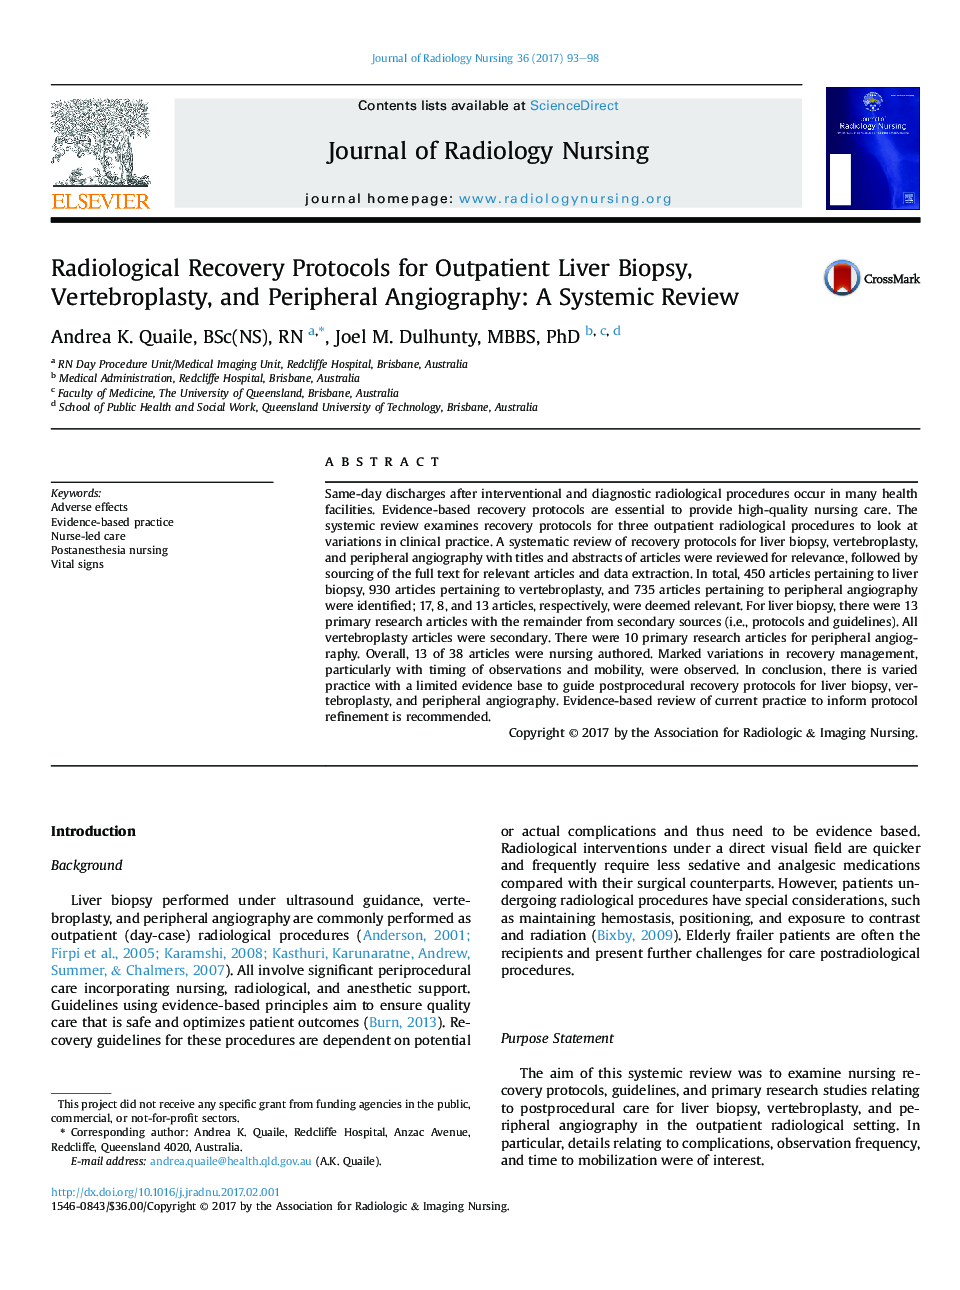 پروتکل های بازیابی رادیولوژیک برای بیوپسی کبد سرپایی، ورتبروپلاستی و آنژیوگرافی محیطی: یک بررسی سیستمیک 